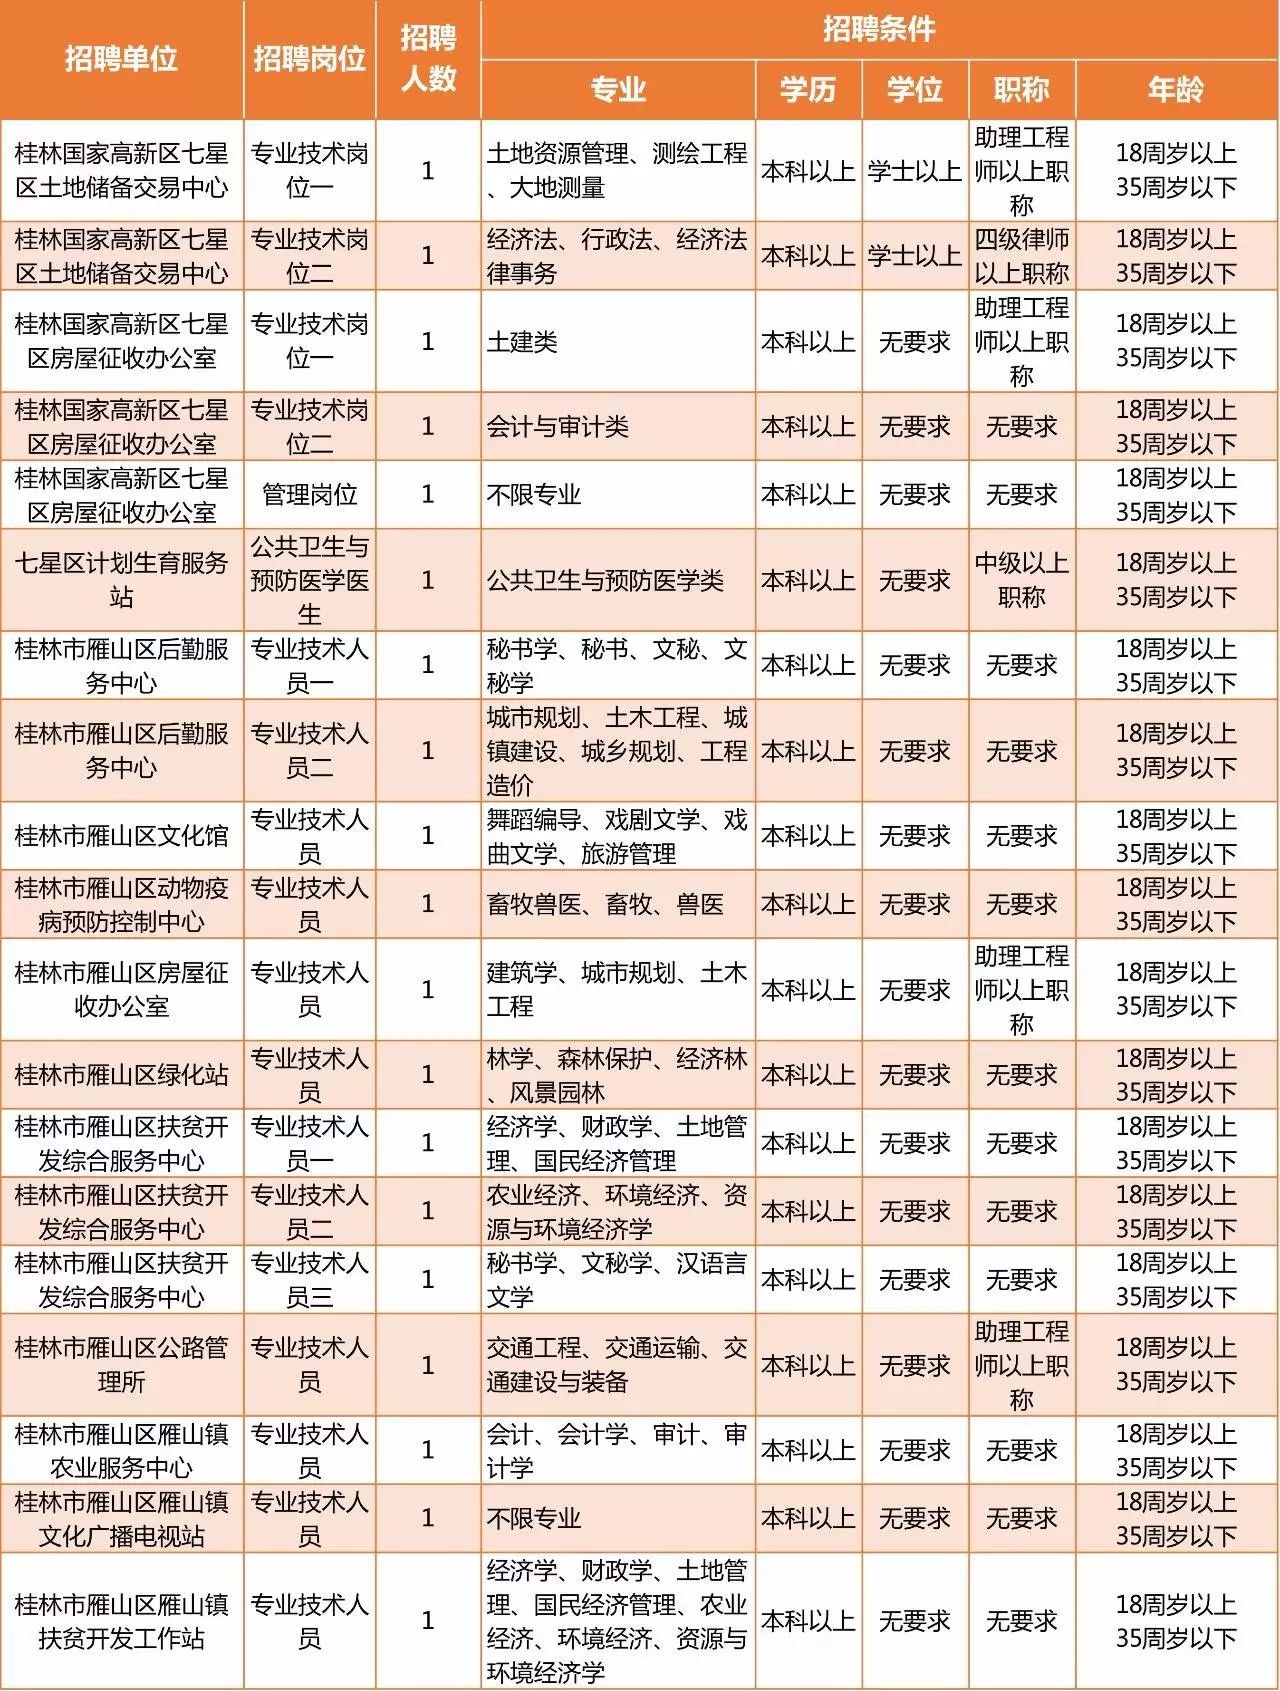 重磅 桂林2017年事业单位招聘公告发布 777个岗位招941人 